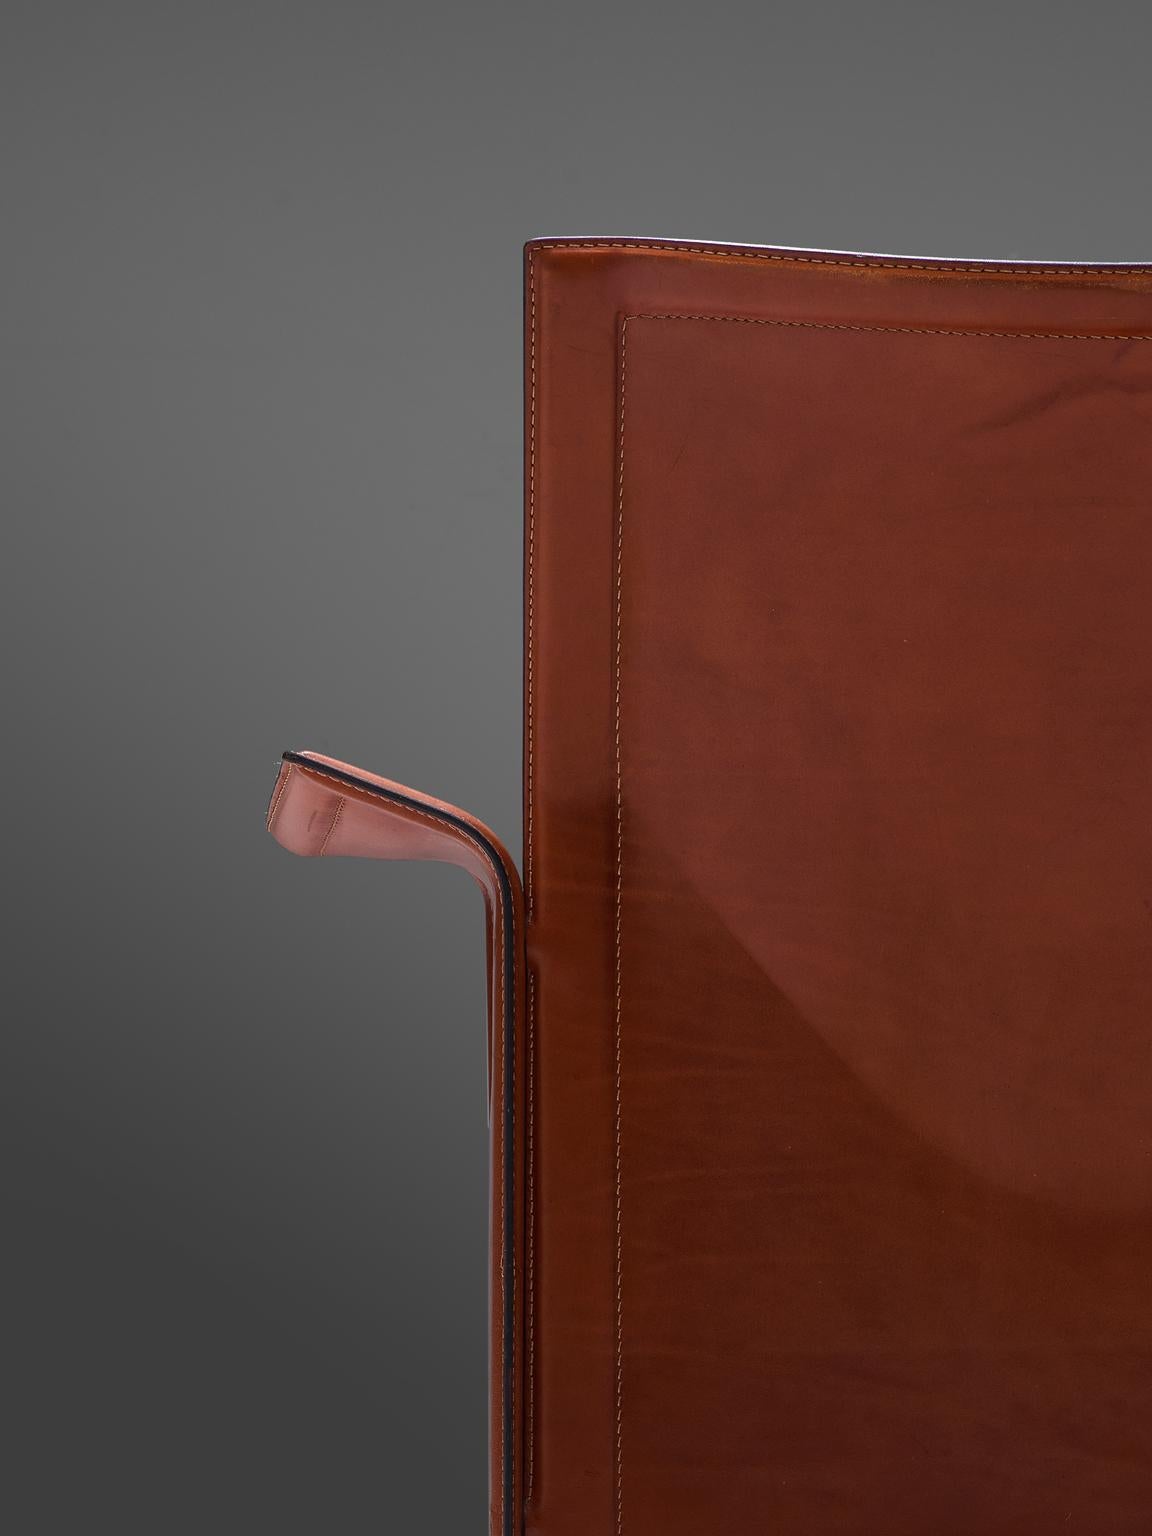 Tito Agnoli Pair of 'Korium' Chairs in Cognac Leather 1